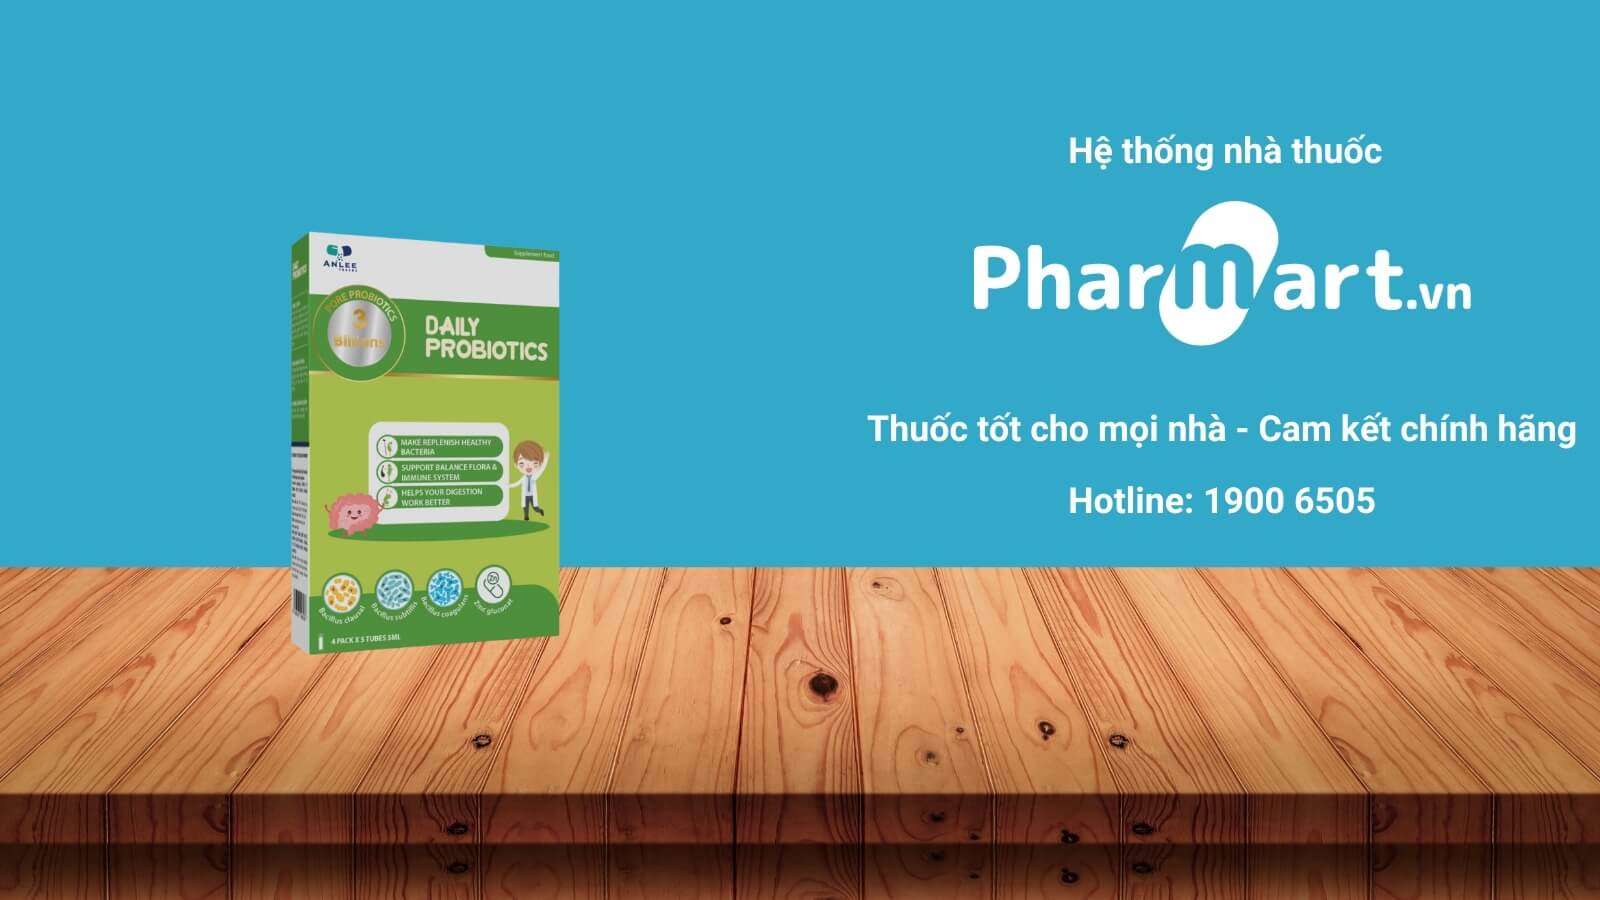 Mua Daily Probiotics chính hãng tại Pharmart.vn